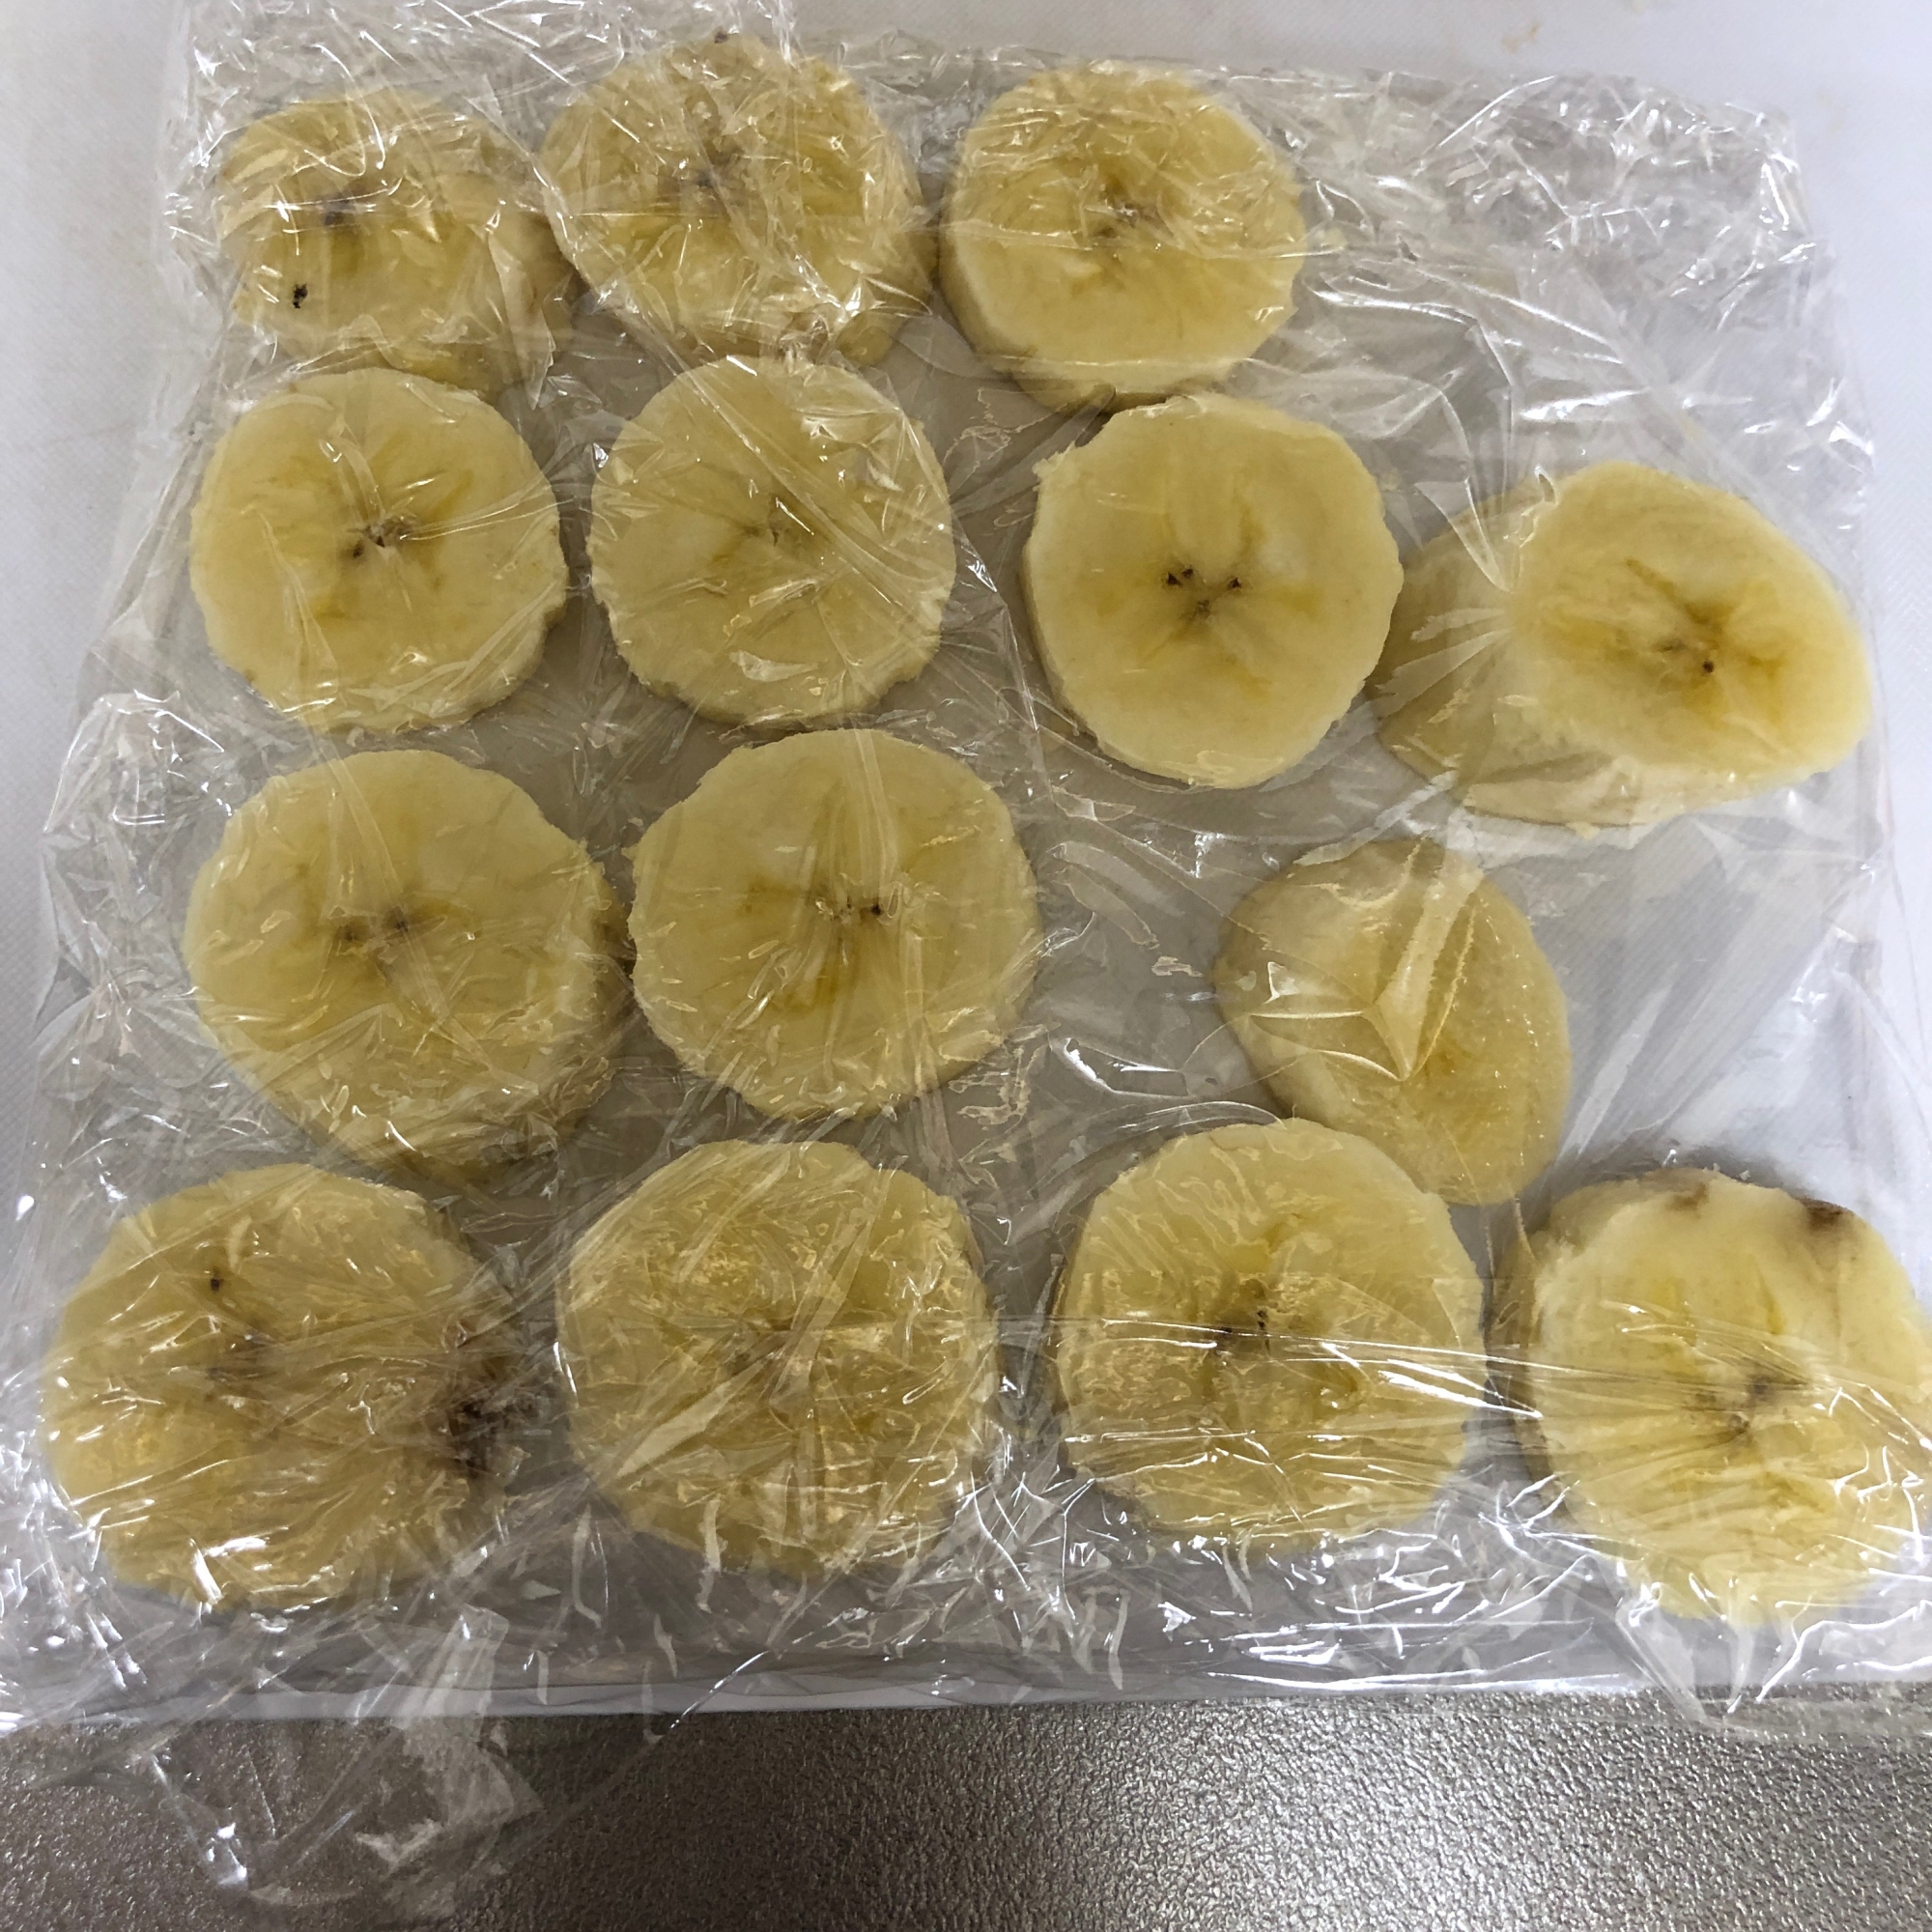 スムージーやヨーグルトに カットバナナの冷凍保存 レシピ 作り方 By ろーるけーき 楽天レシピ